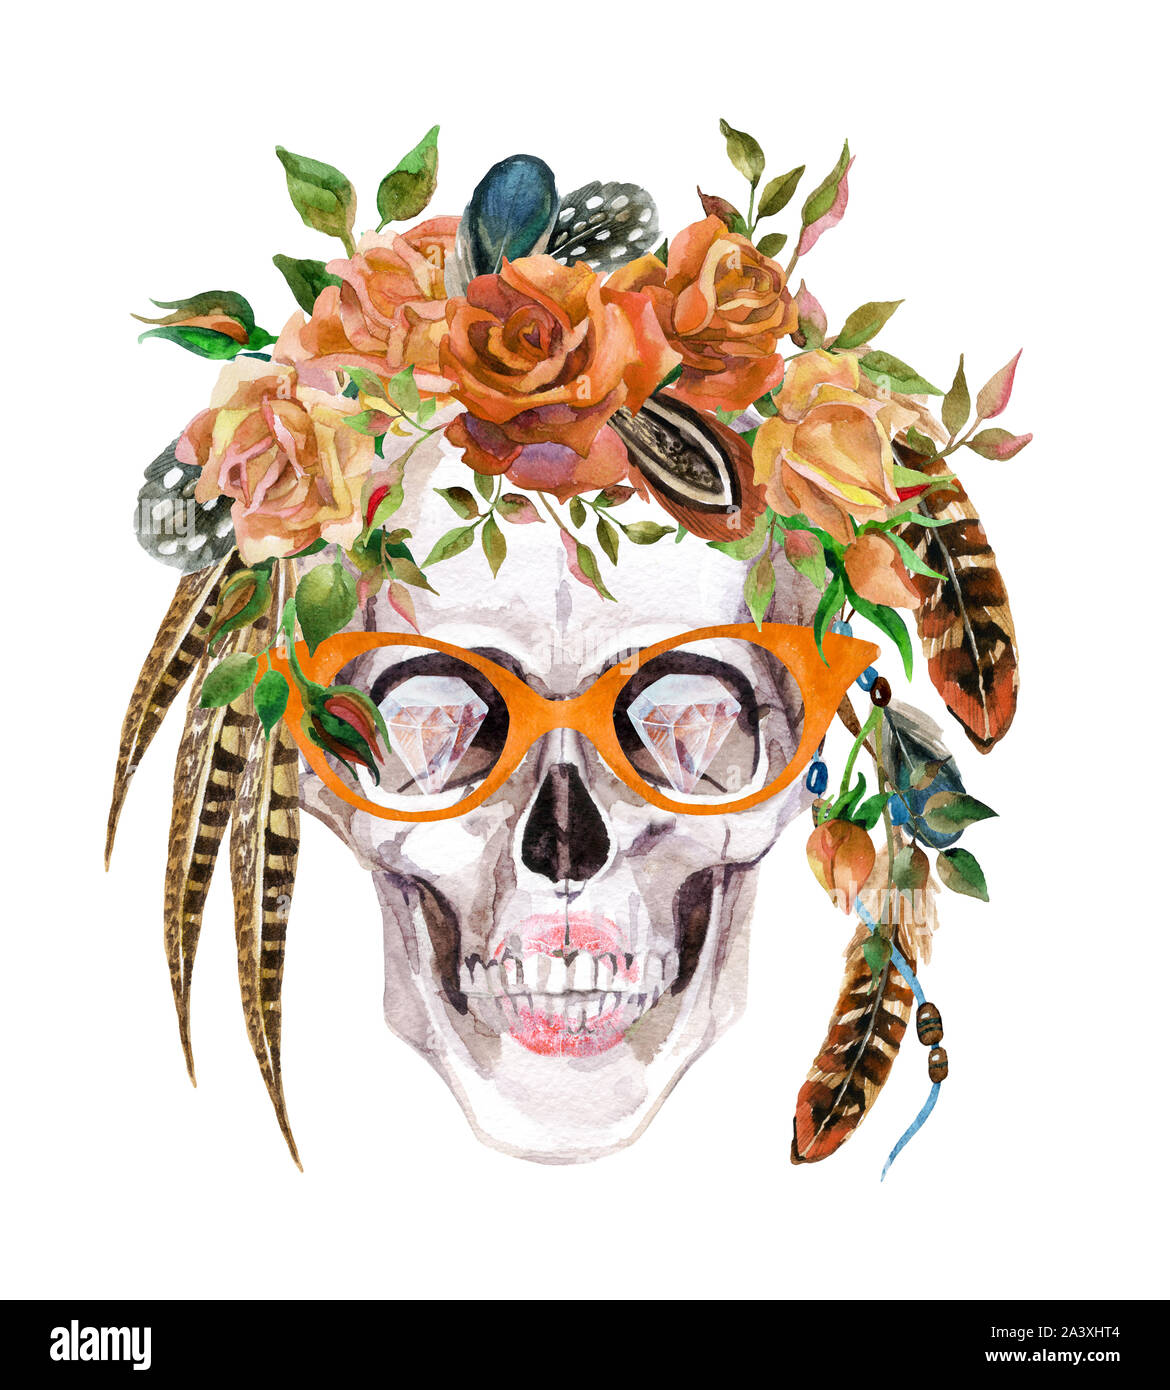 Aquarelle crâne humain dans des verres et gerbe de fleurs et de plumes de la tête d'enrubannage. Illustration portrait peint main hipster isolé sur blanc Banque D'Images